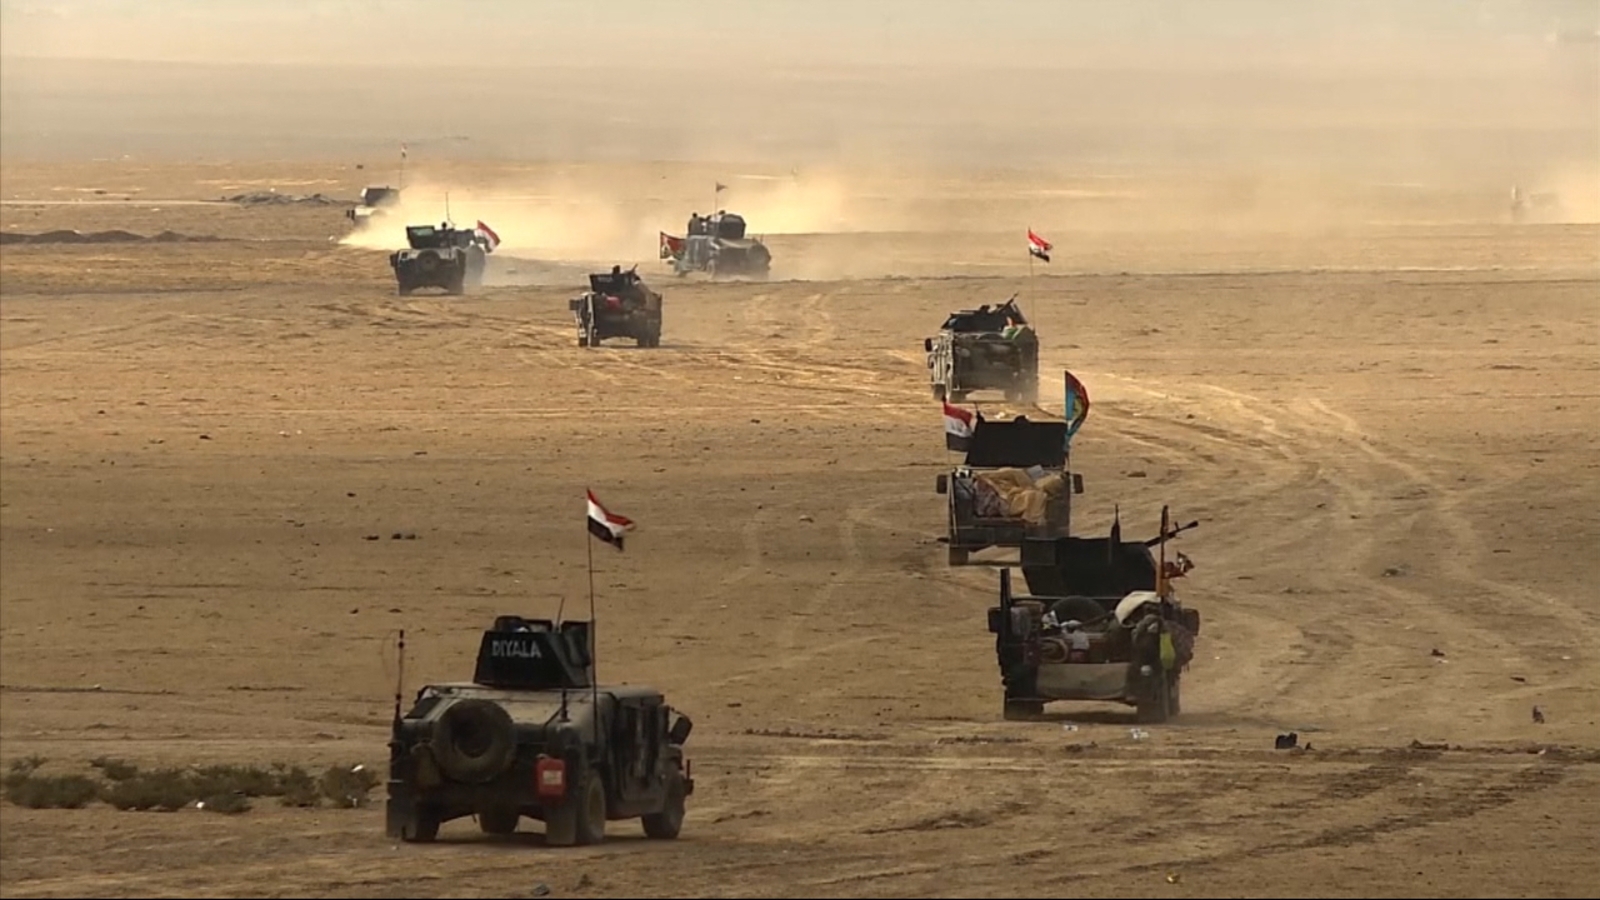 Iraqi forces mosul